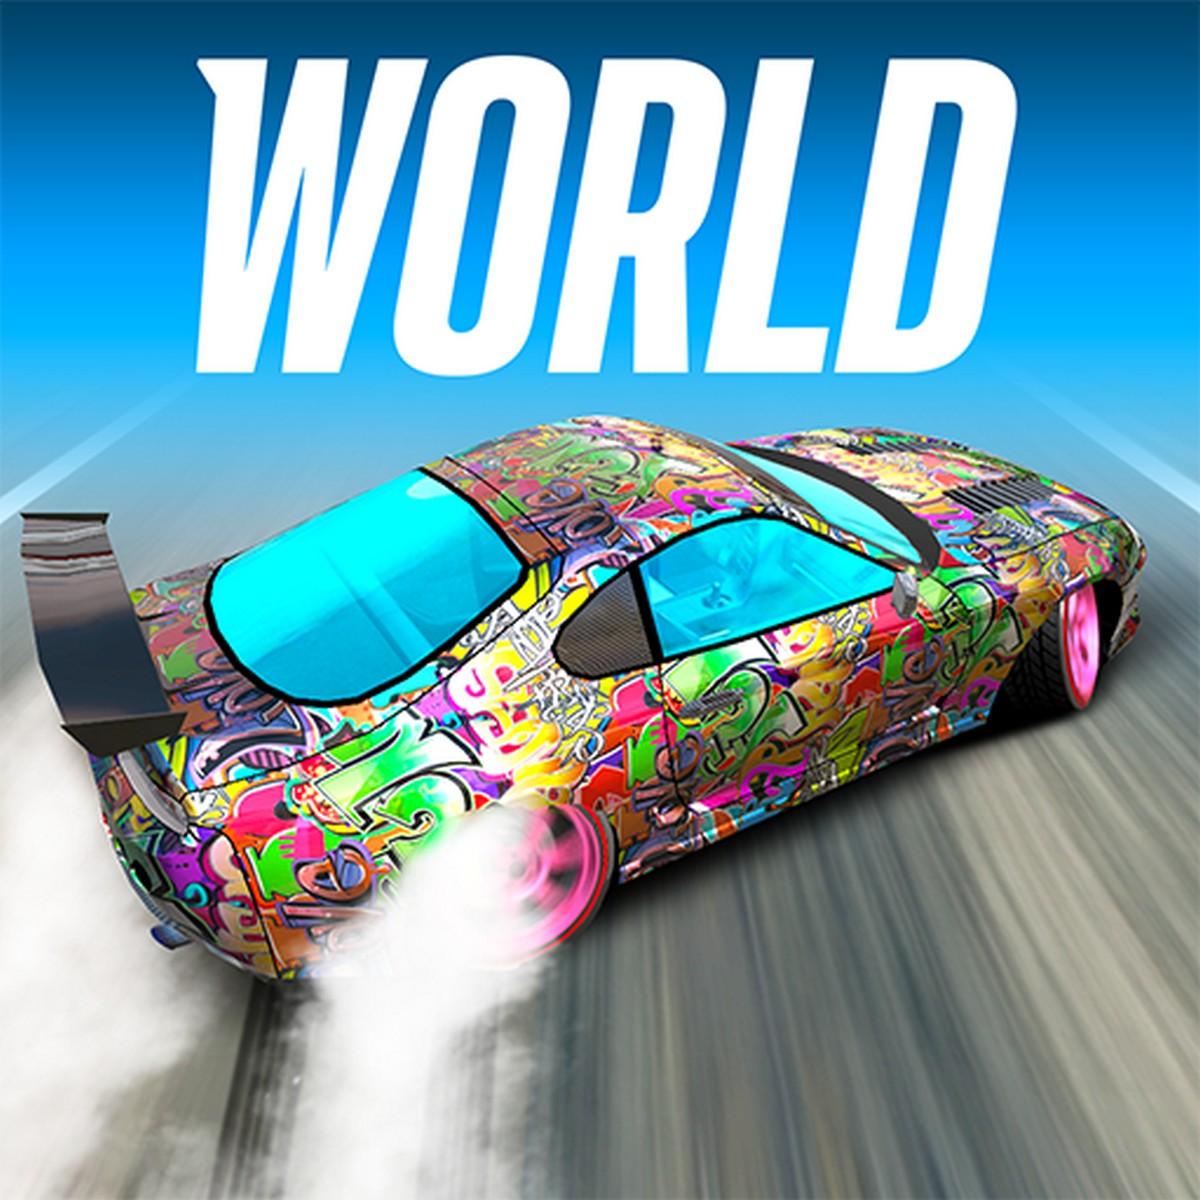 Drift Max World APK MOD